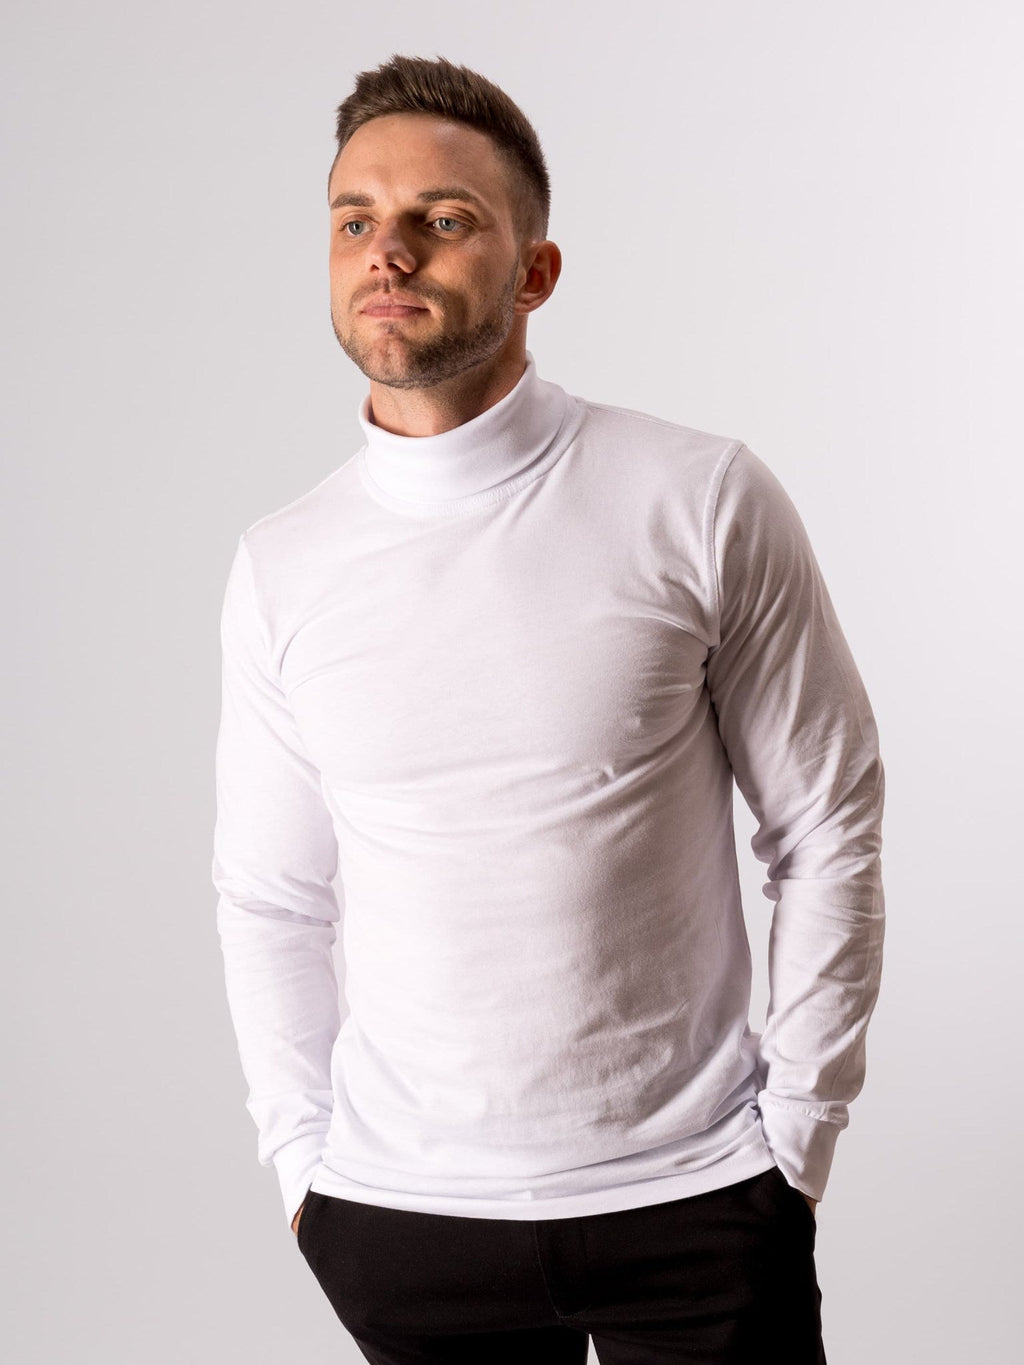 Ritininis apykaklės megztinis - baltas